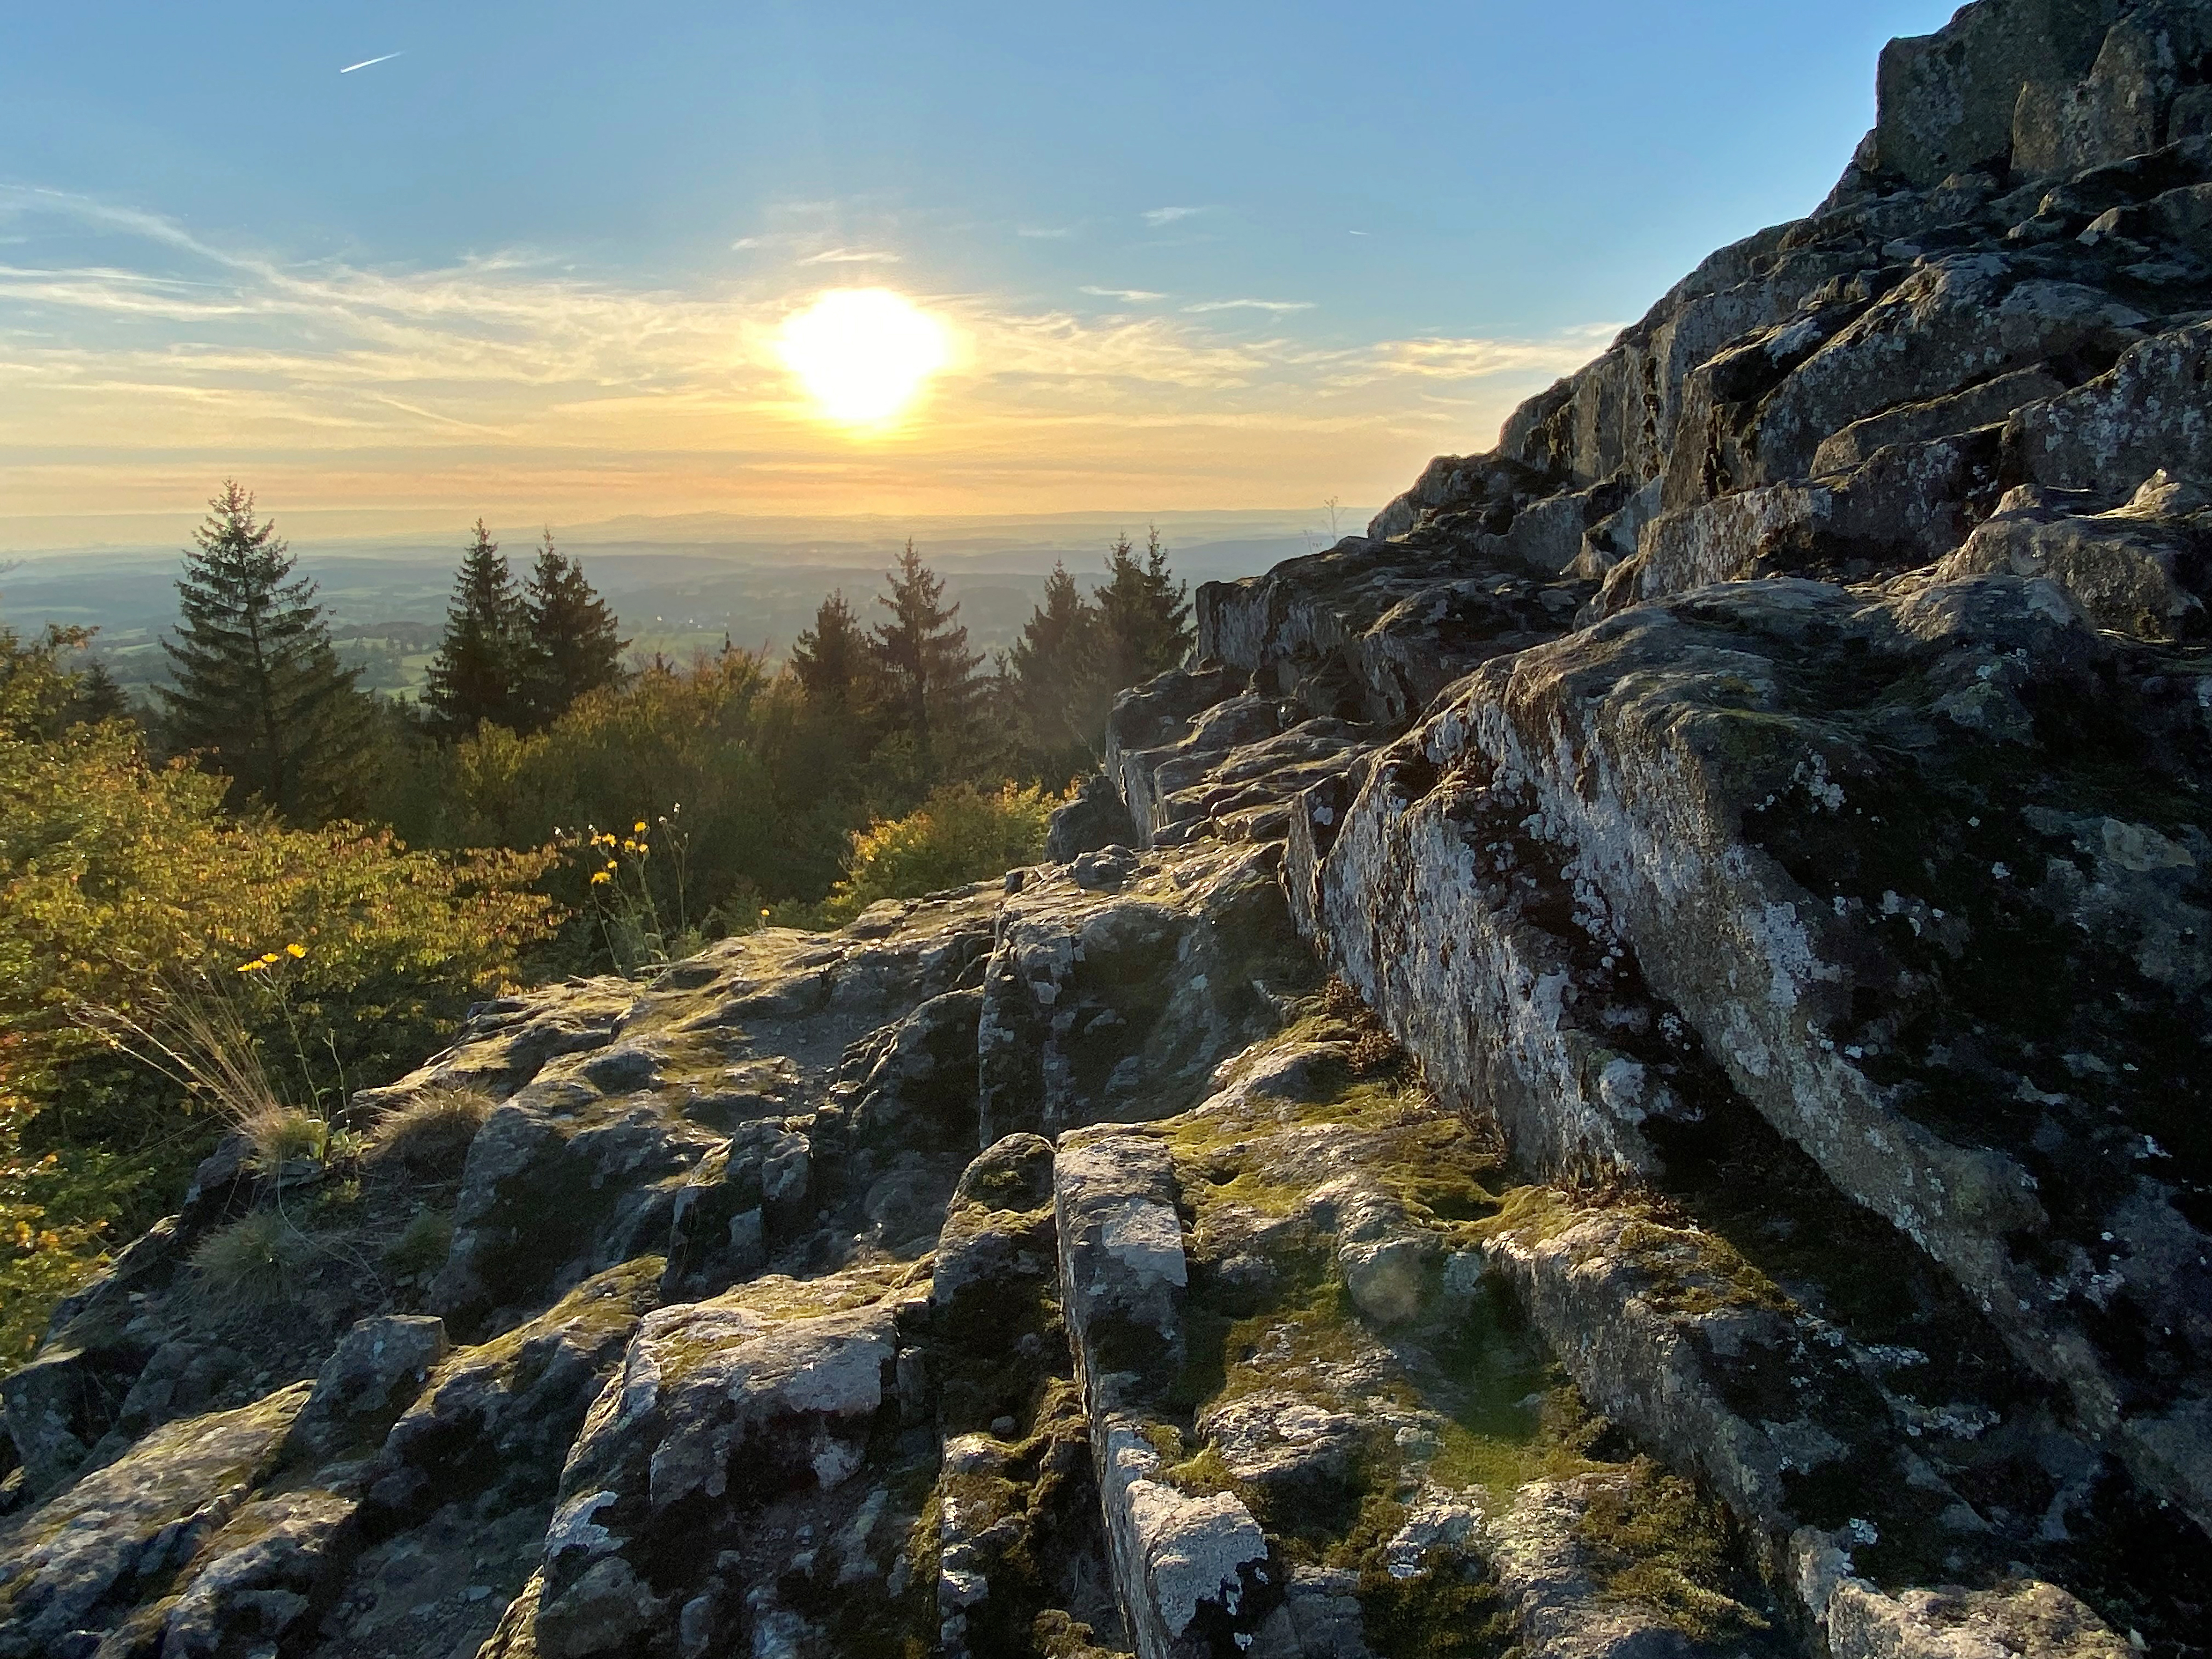 Der Blick vom schroffen Basaltfelsen des Geotopes Bilstein im hessischen Vogelsberg geht weit über das geschwungene Land der Vulkanregion. Der Herbst hat das Laub des Waldes bunt gefärbt und die warmen Sonnestrahlen zaubern ein magisches Licht am strahlend blauen Himmel.